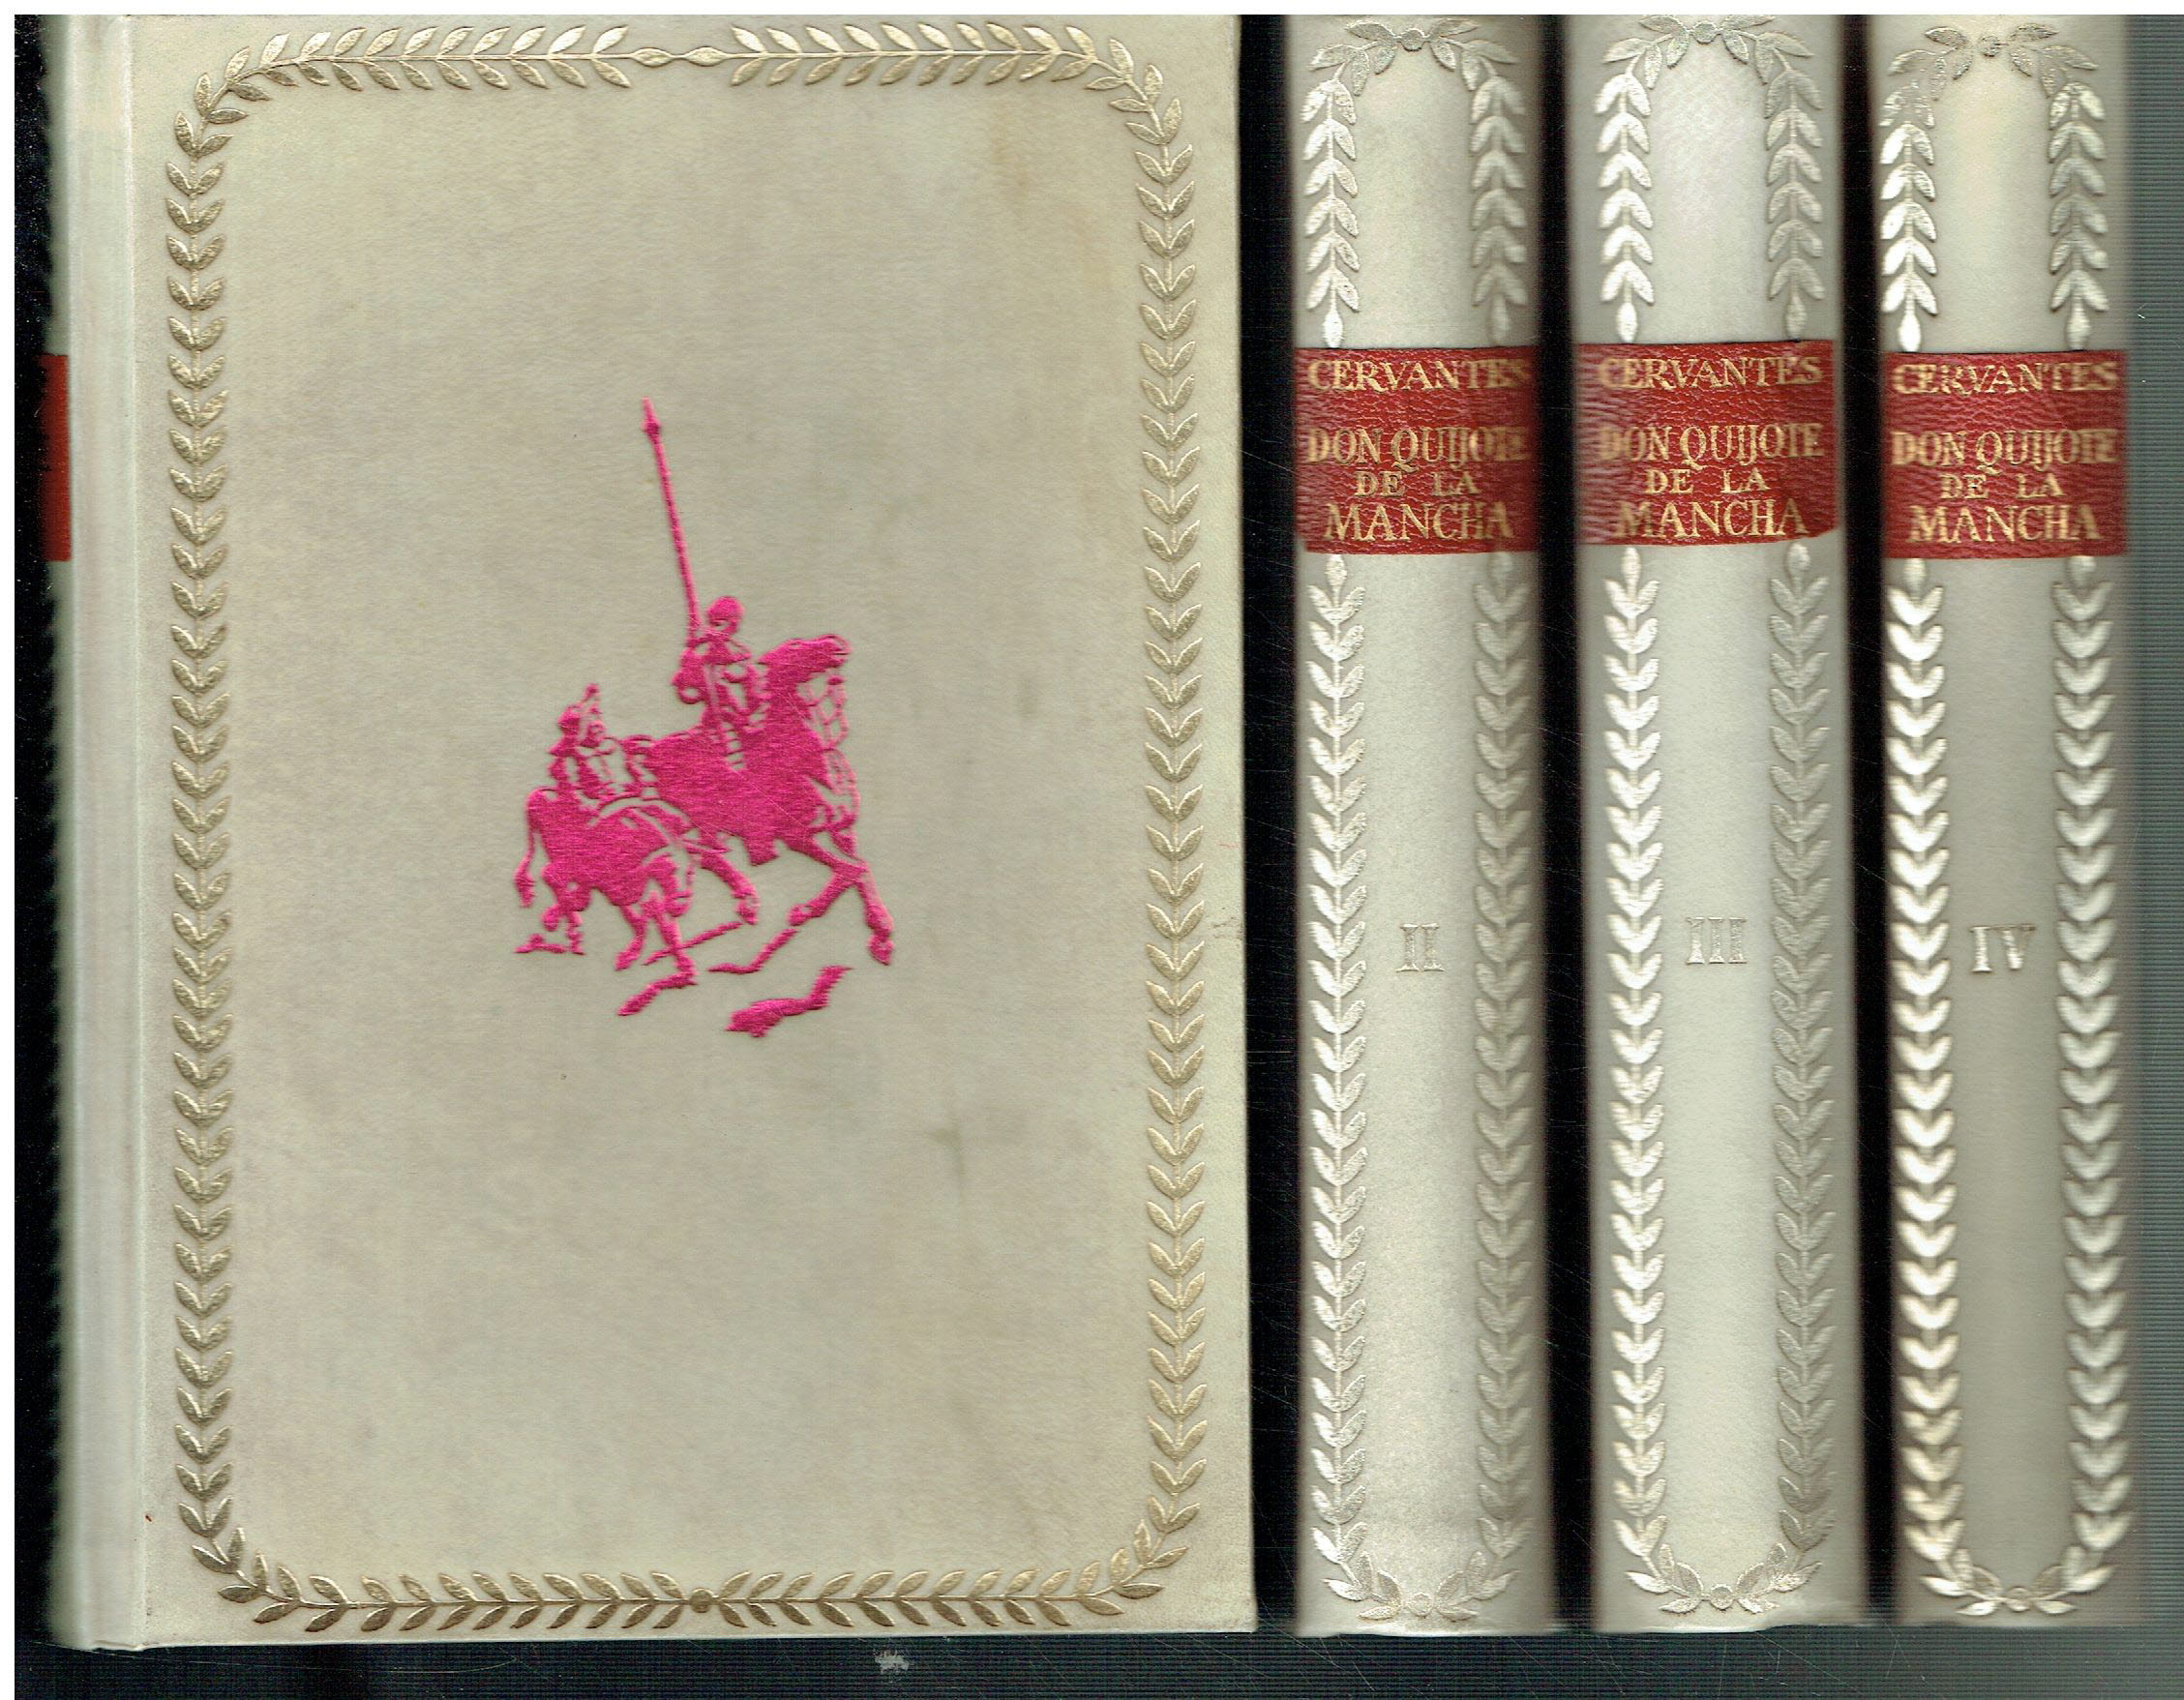 El ingenioso hidalgo Don Quijote de la Mancha. 4 vols. Edición IV Centenario. - Miguel de Cervantes Saavedra.